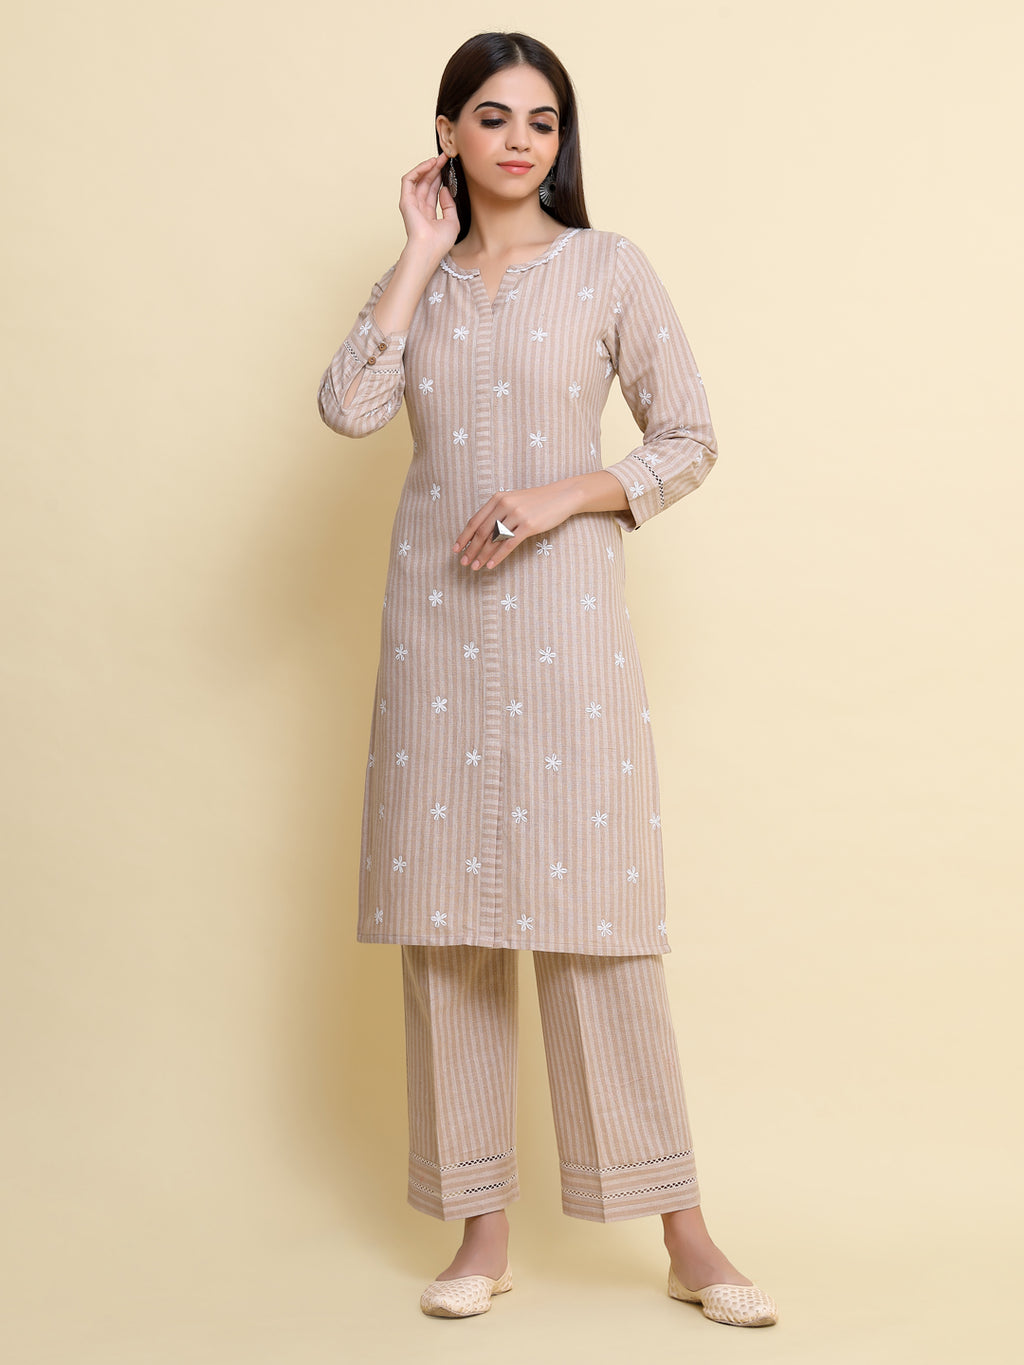 holi outfit ideas 2023 wear short kurti like mira rajput kareena kapoor -  Holi पर रेडी होने के लिए बिल्कुल परफेक्ट है करीना कपूर-मीरा राजपूत के ये  शार्ट कुर्ती डिजाइन, फैशन ...